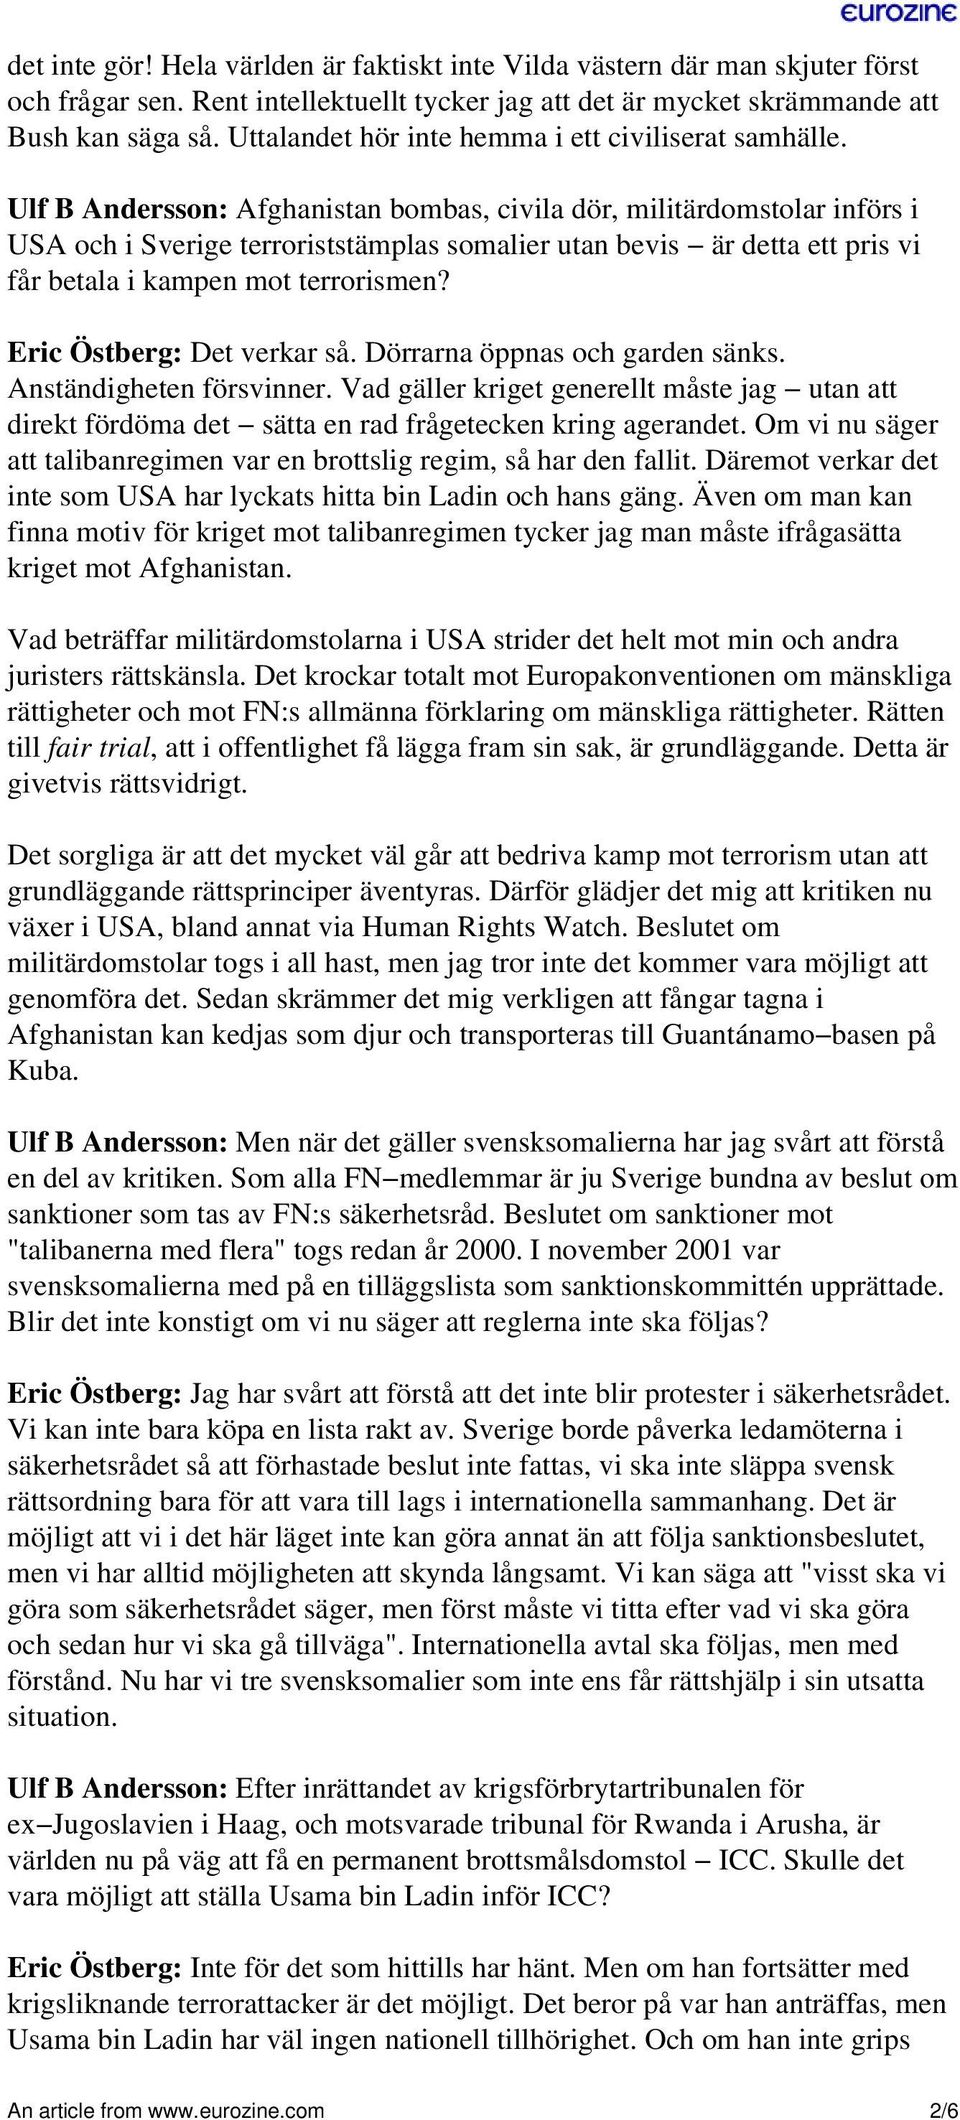 Ulf B Andersson: Afghanistan bombas, civila dör, militärdomstolar införs i USA och i Sverige terroriststämplas somalier utan bevis är detta ett pris vi får betala i kampen mot terrorismen?